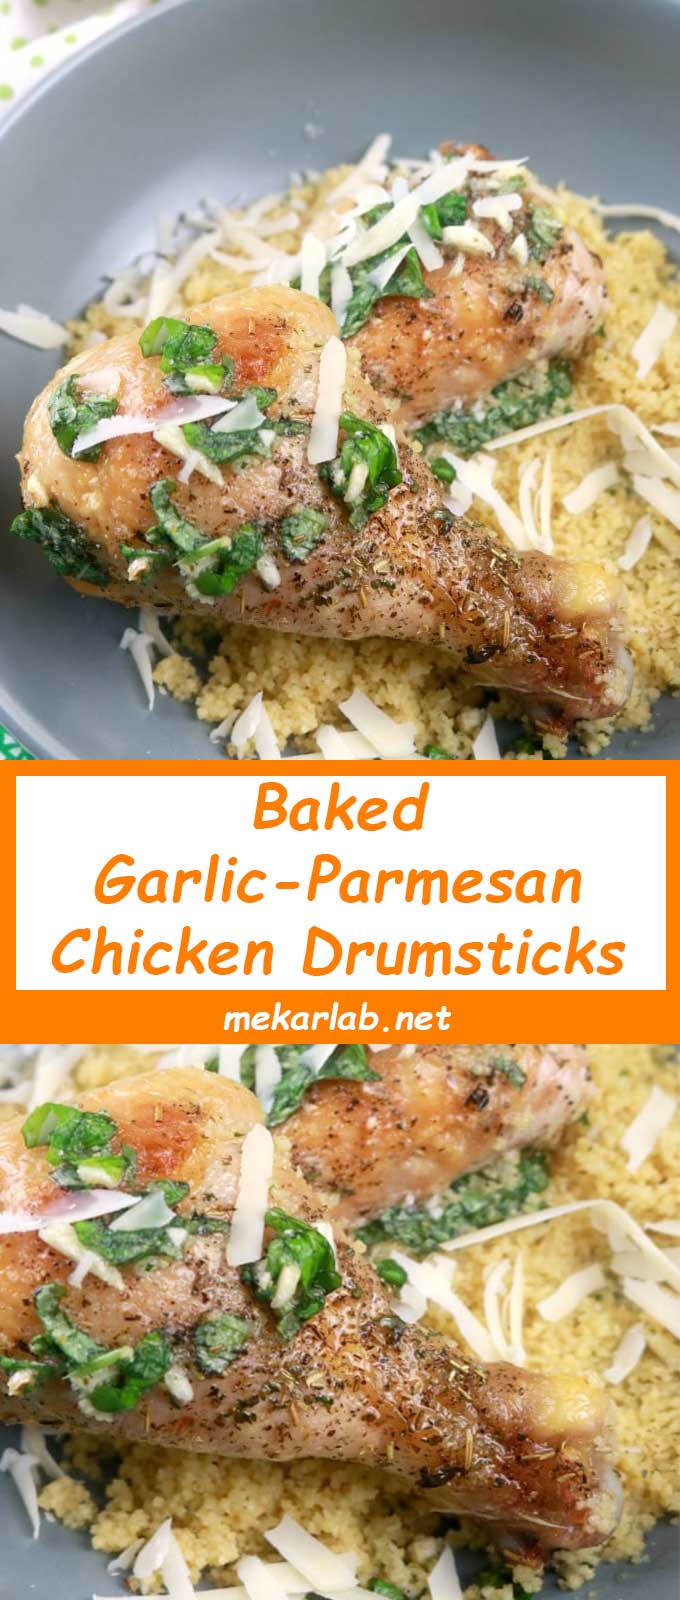 Baked Garlic-Parmesan Chicken Drumsticks